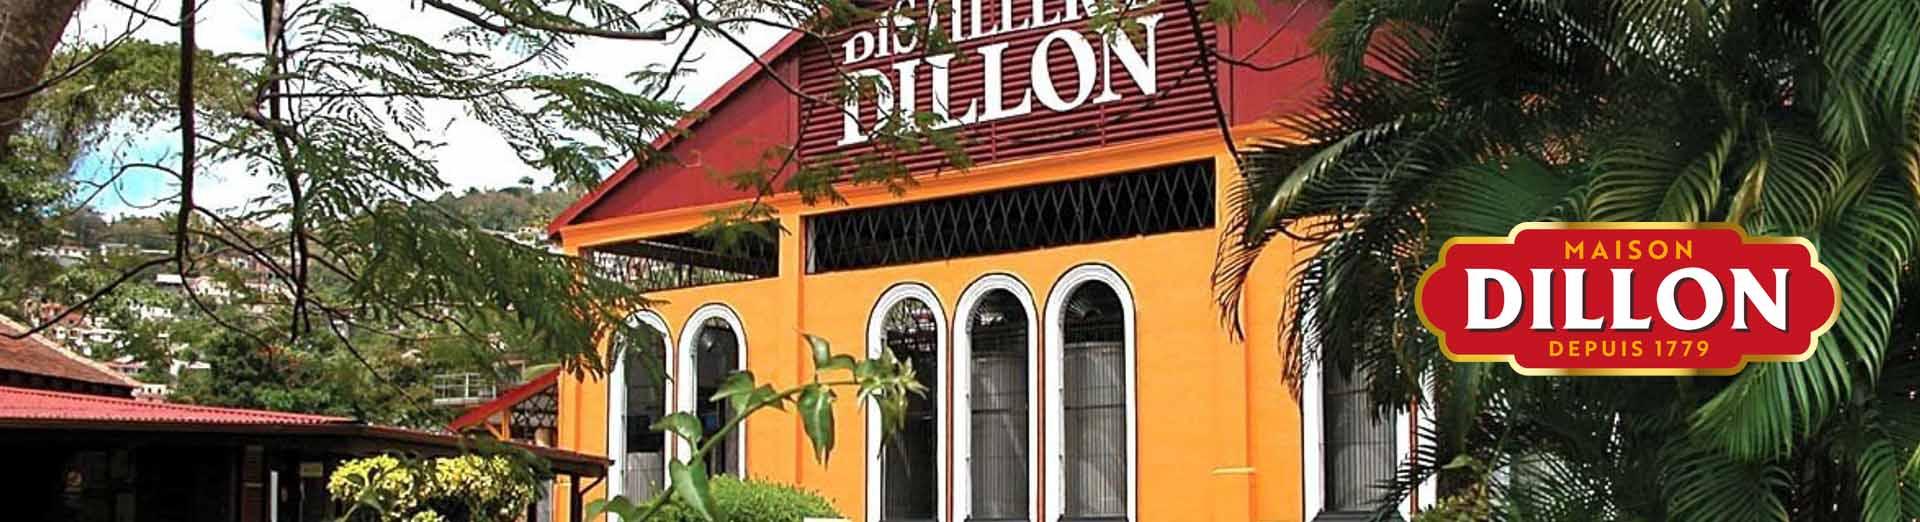 dillon-maison